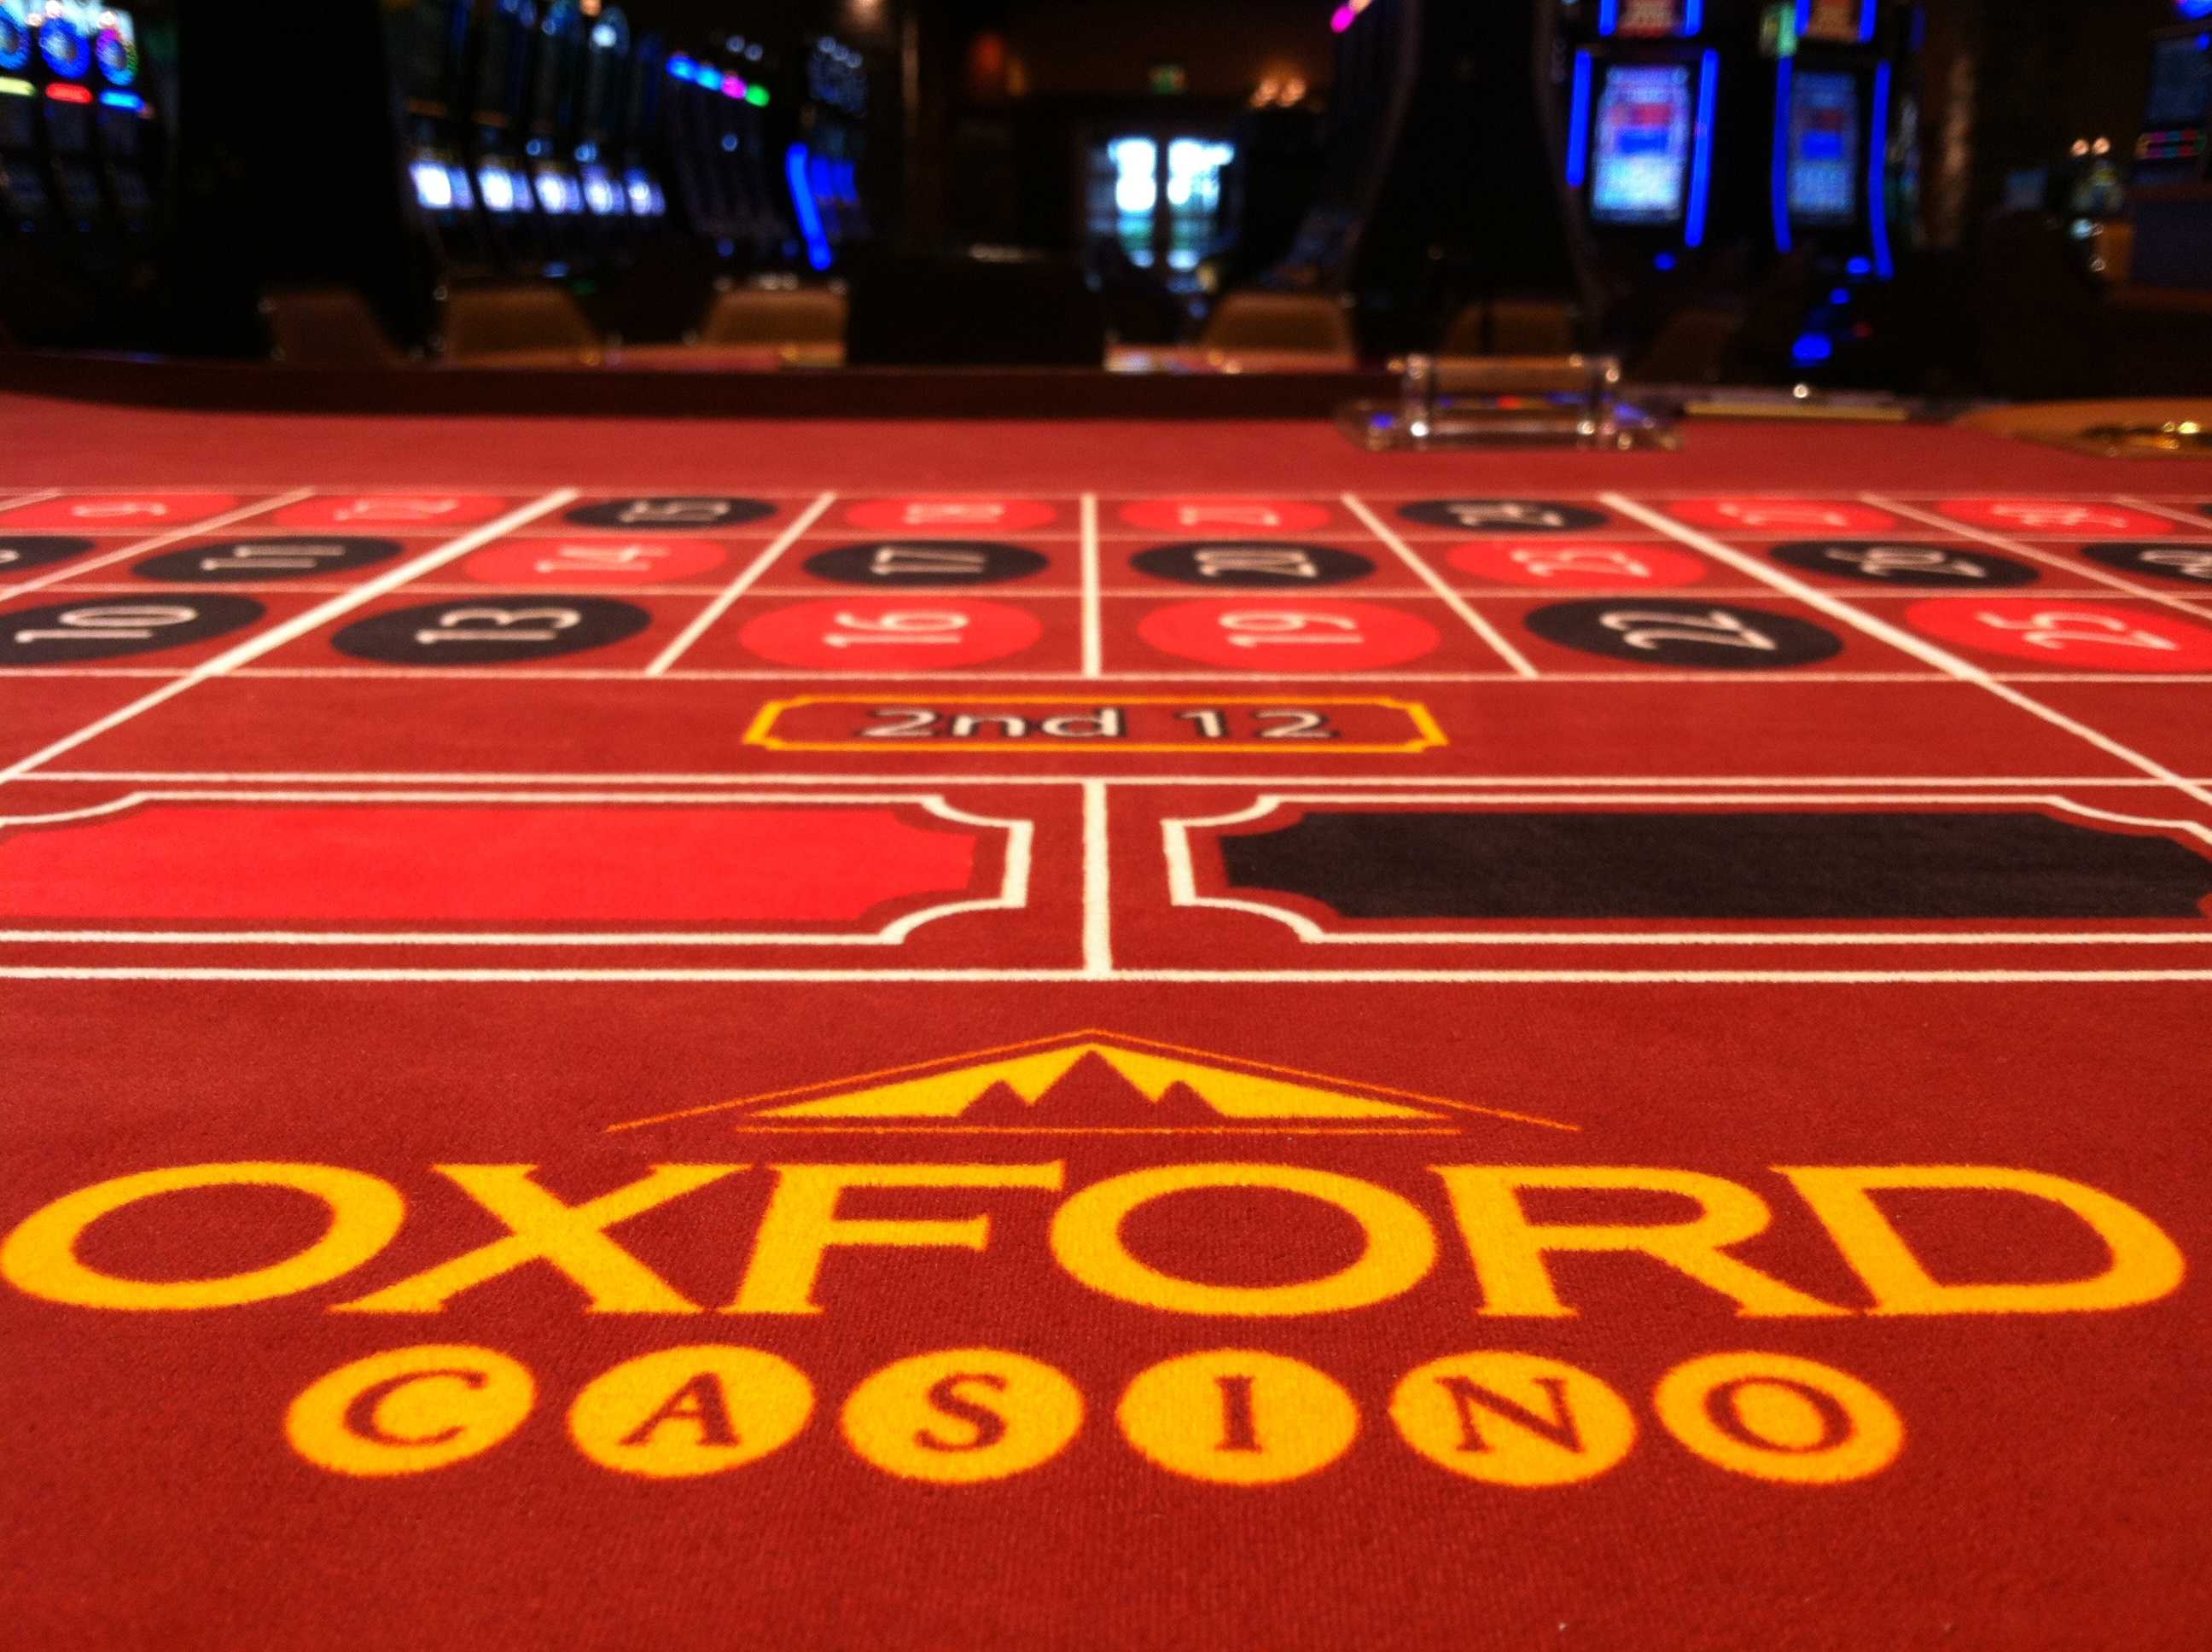 oxford casino donation request